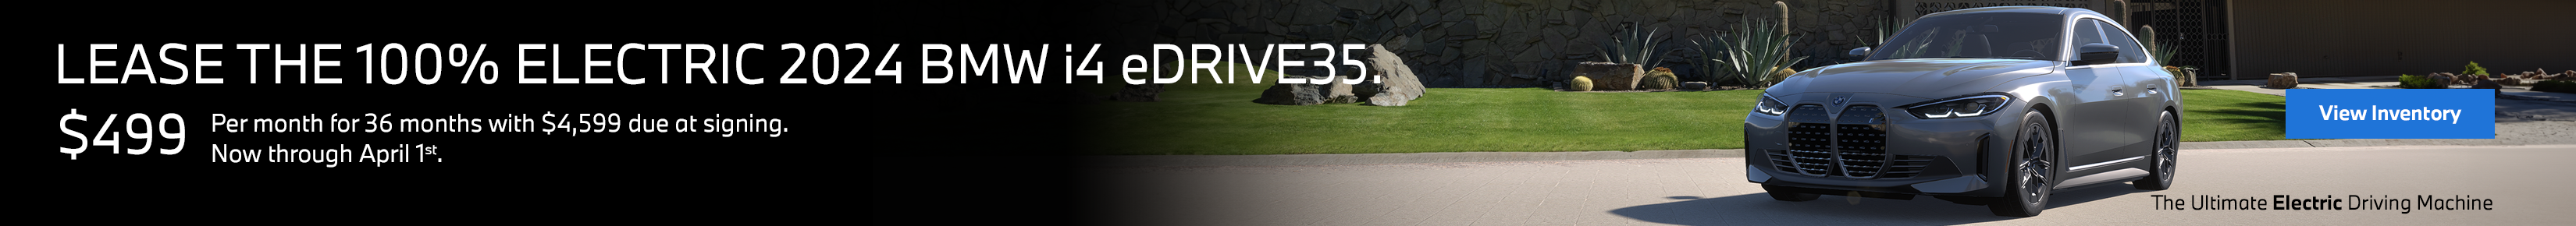 New i4 eDrive35 Offer